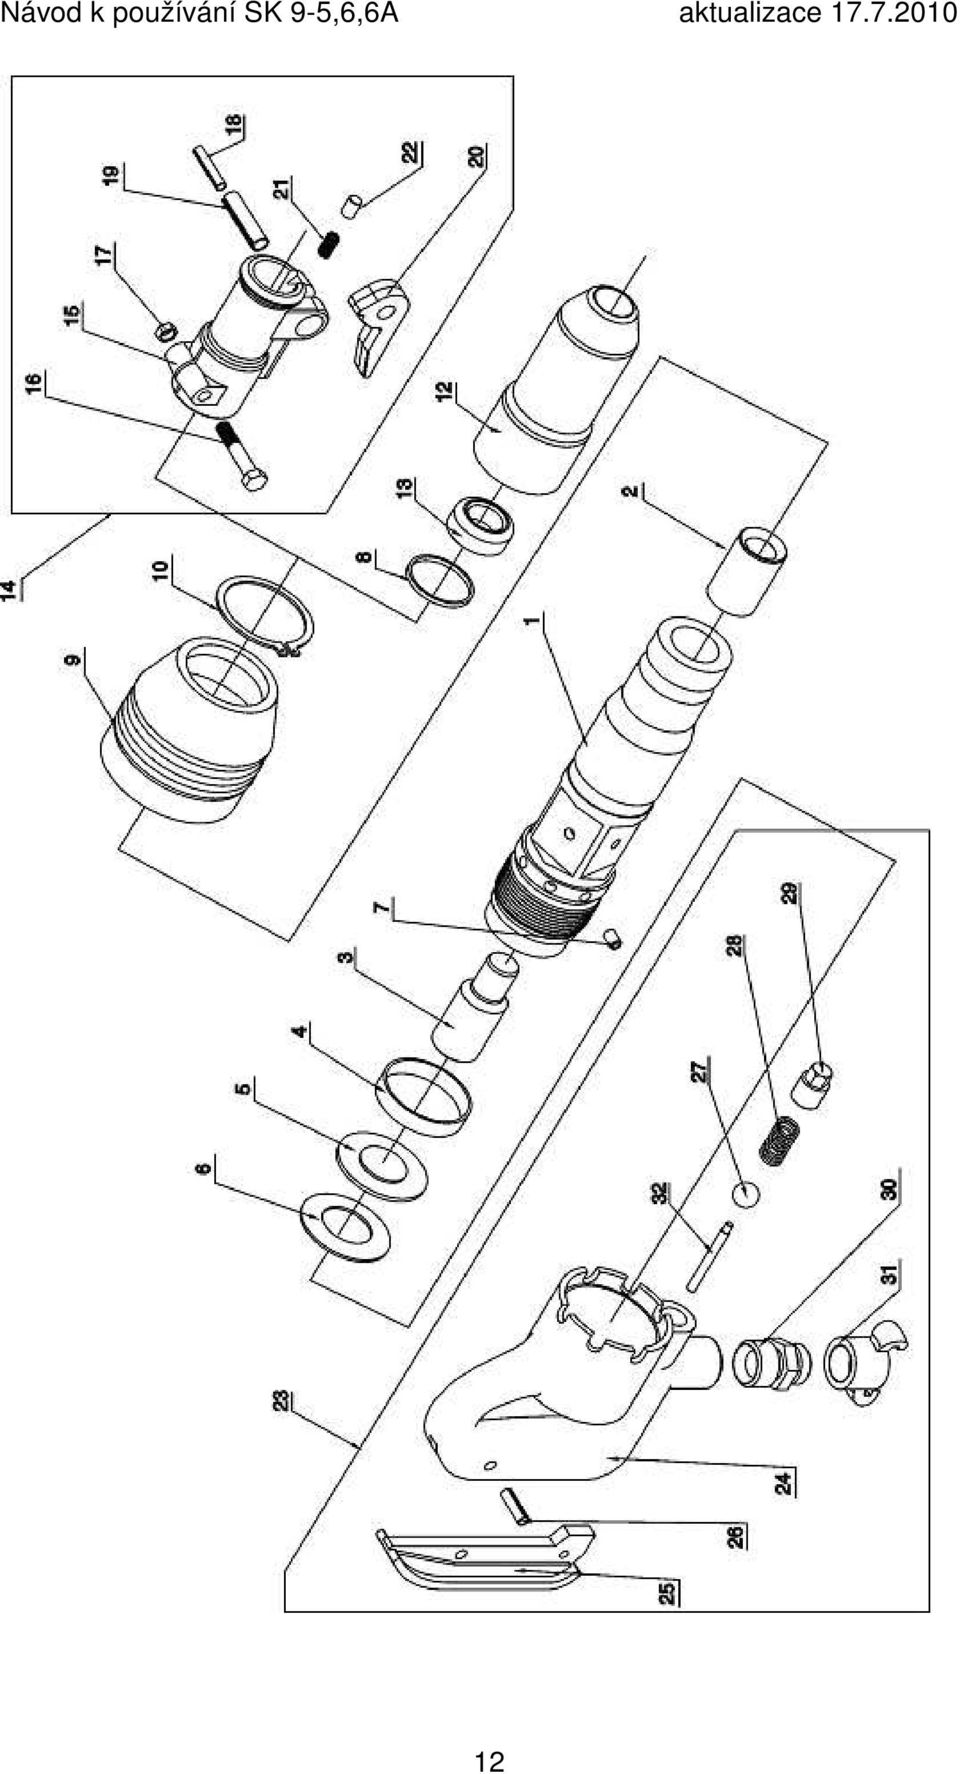 Návod k používání pro sbíjecí kladivo SK 9-5,6,6A - PDF Stažení zdarma